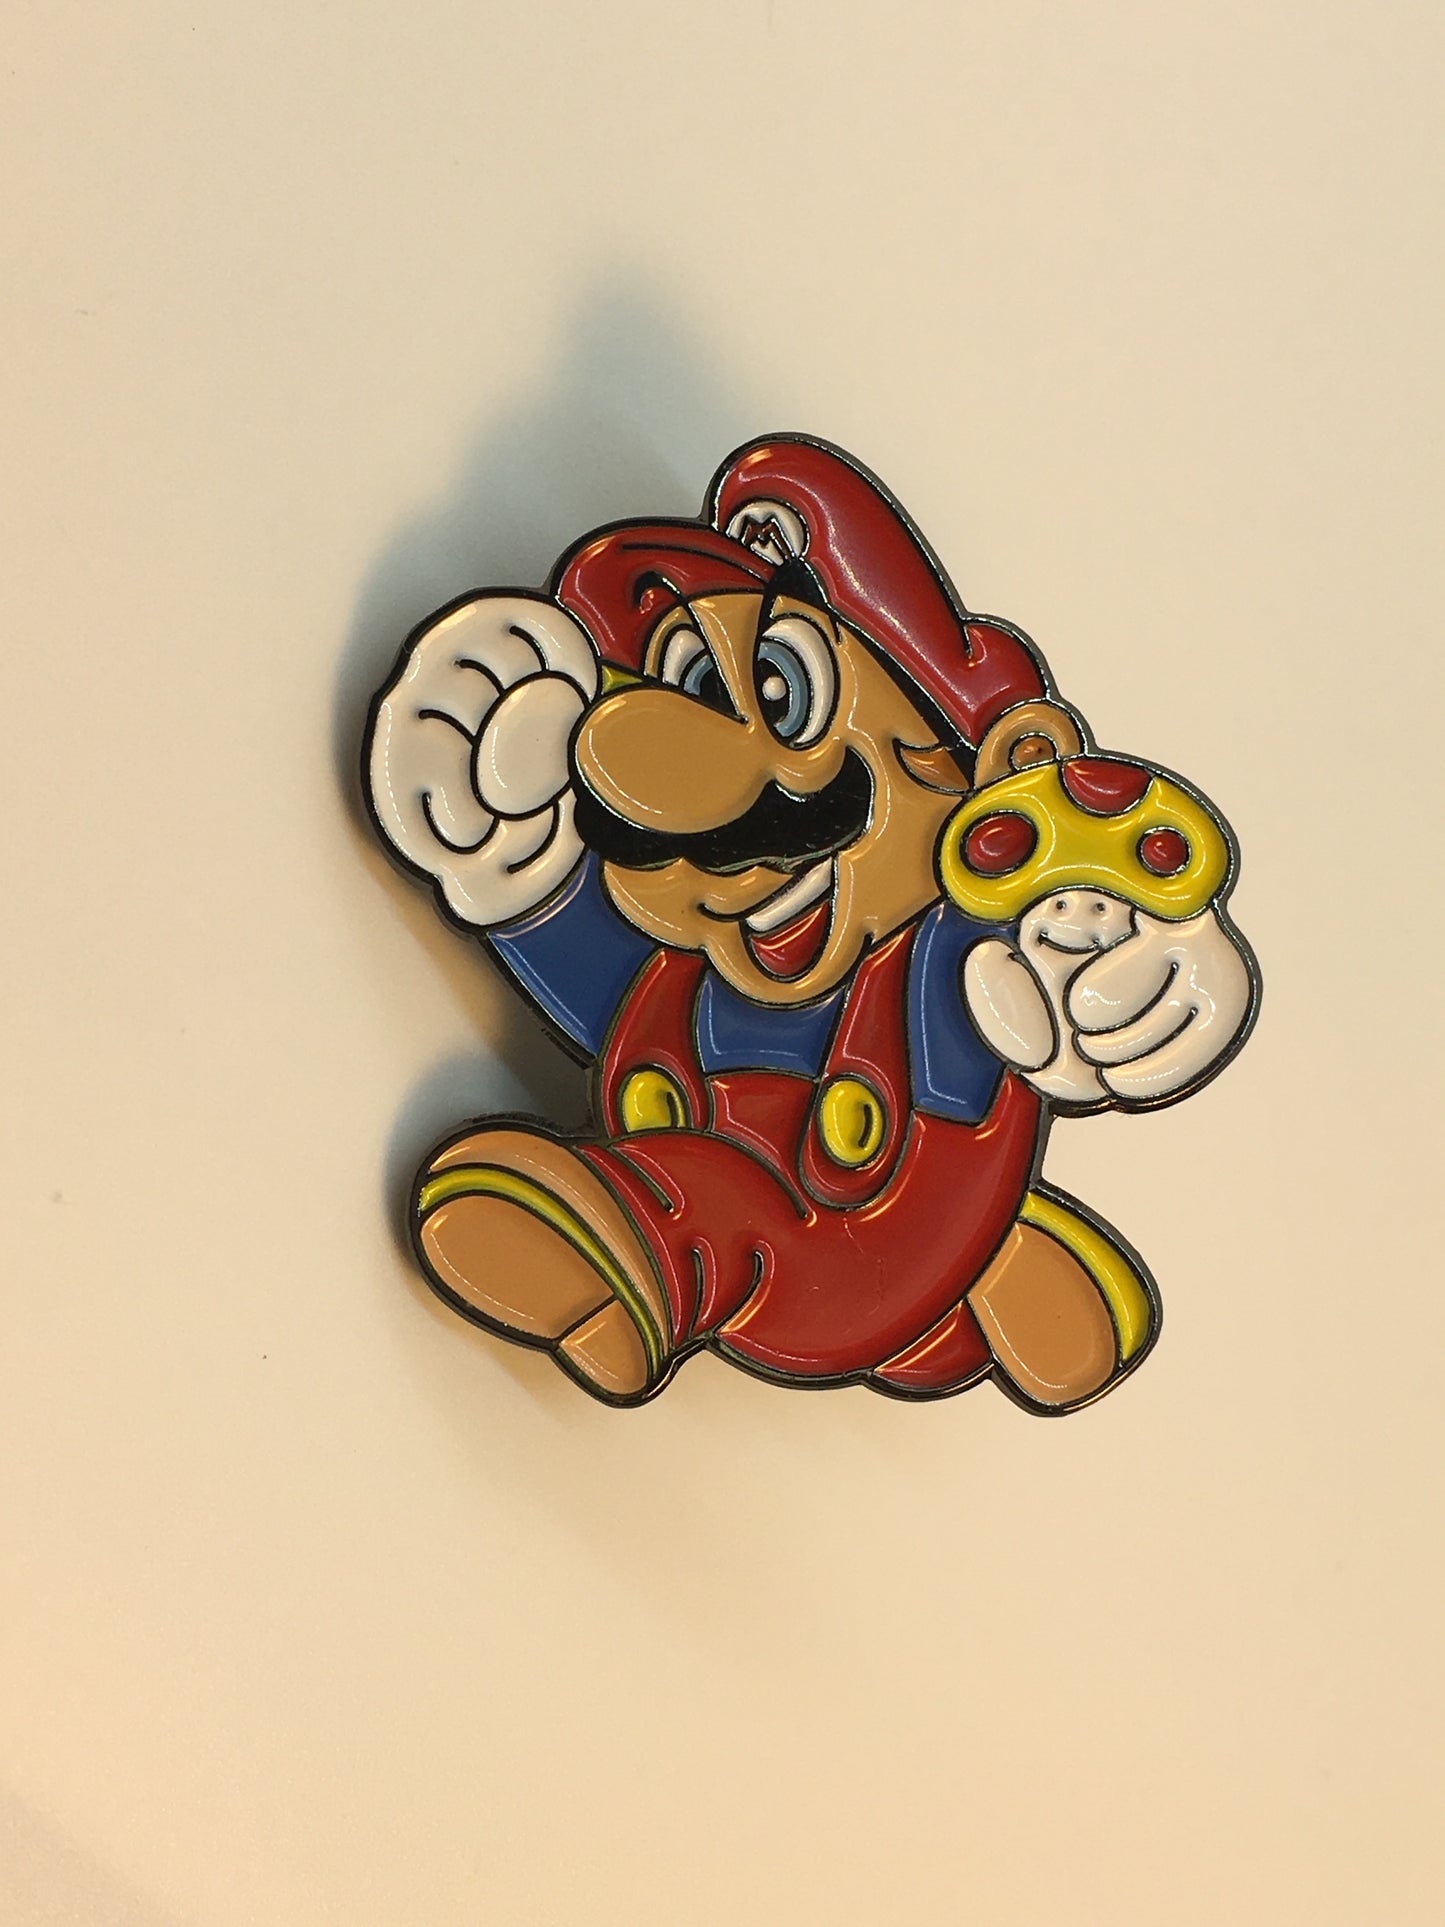 Mario Jumping with Mushroom Pin